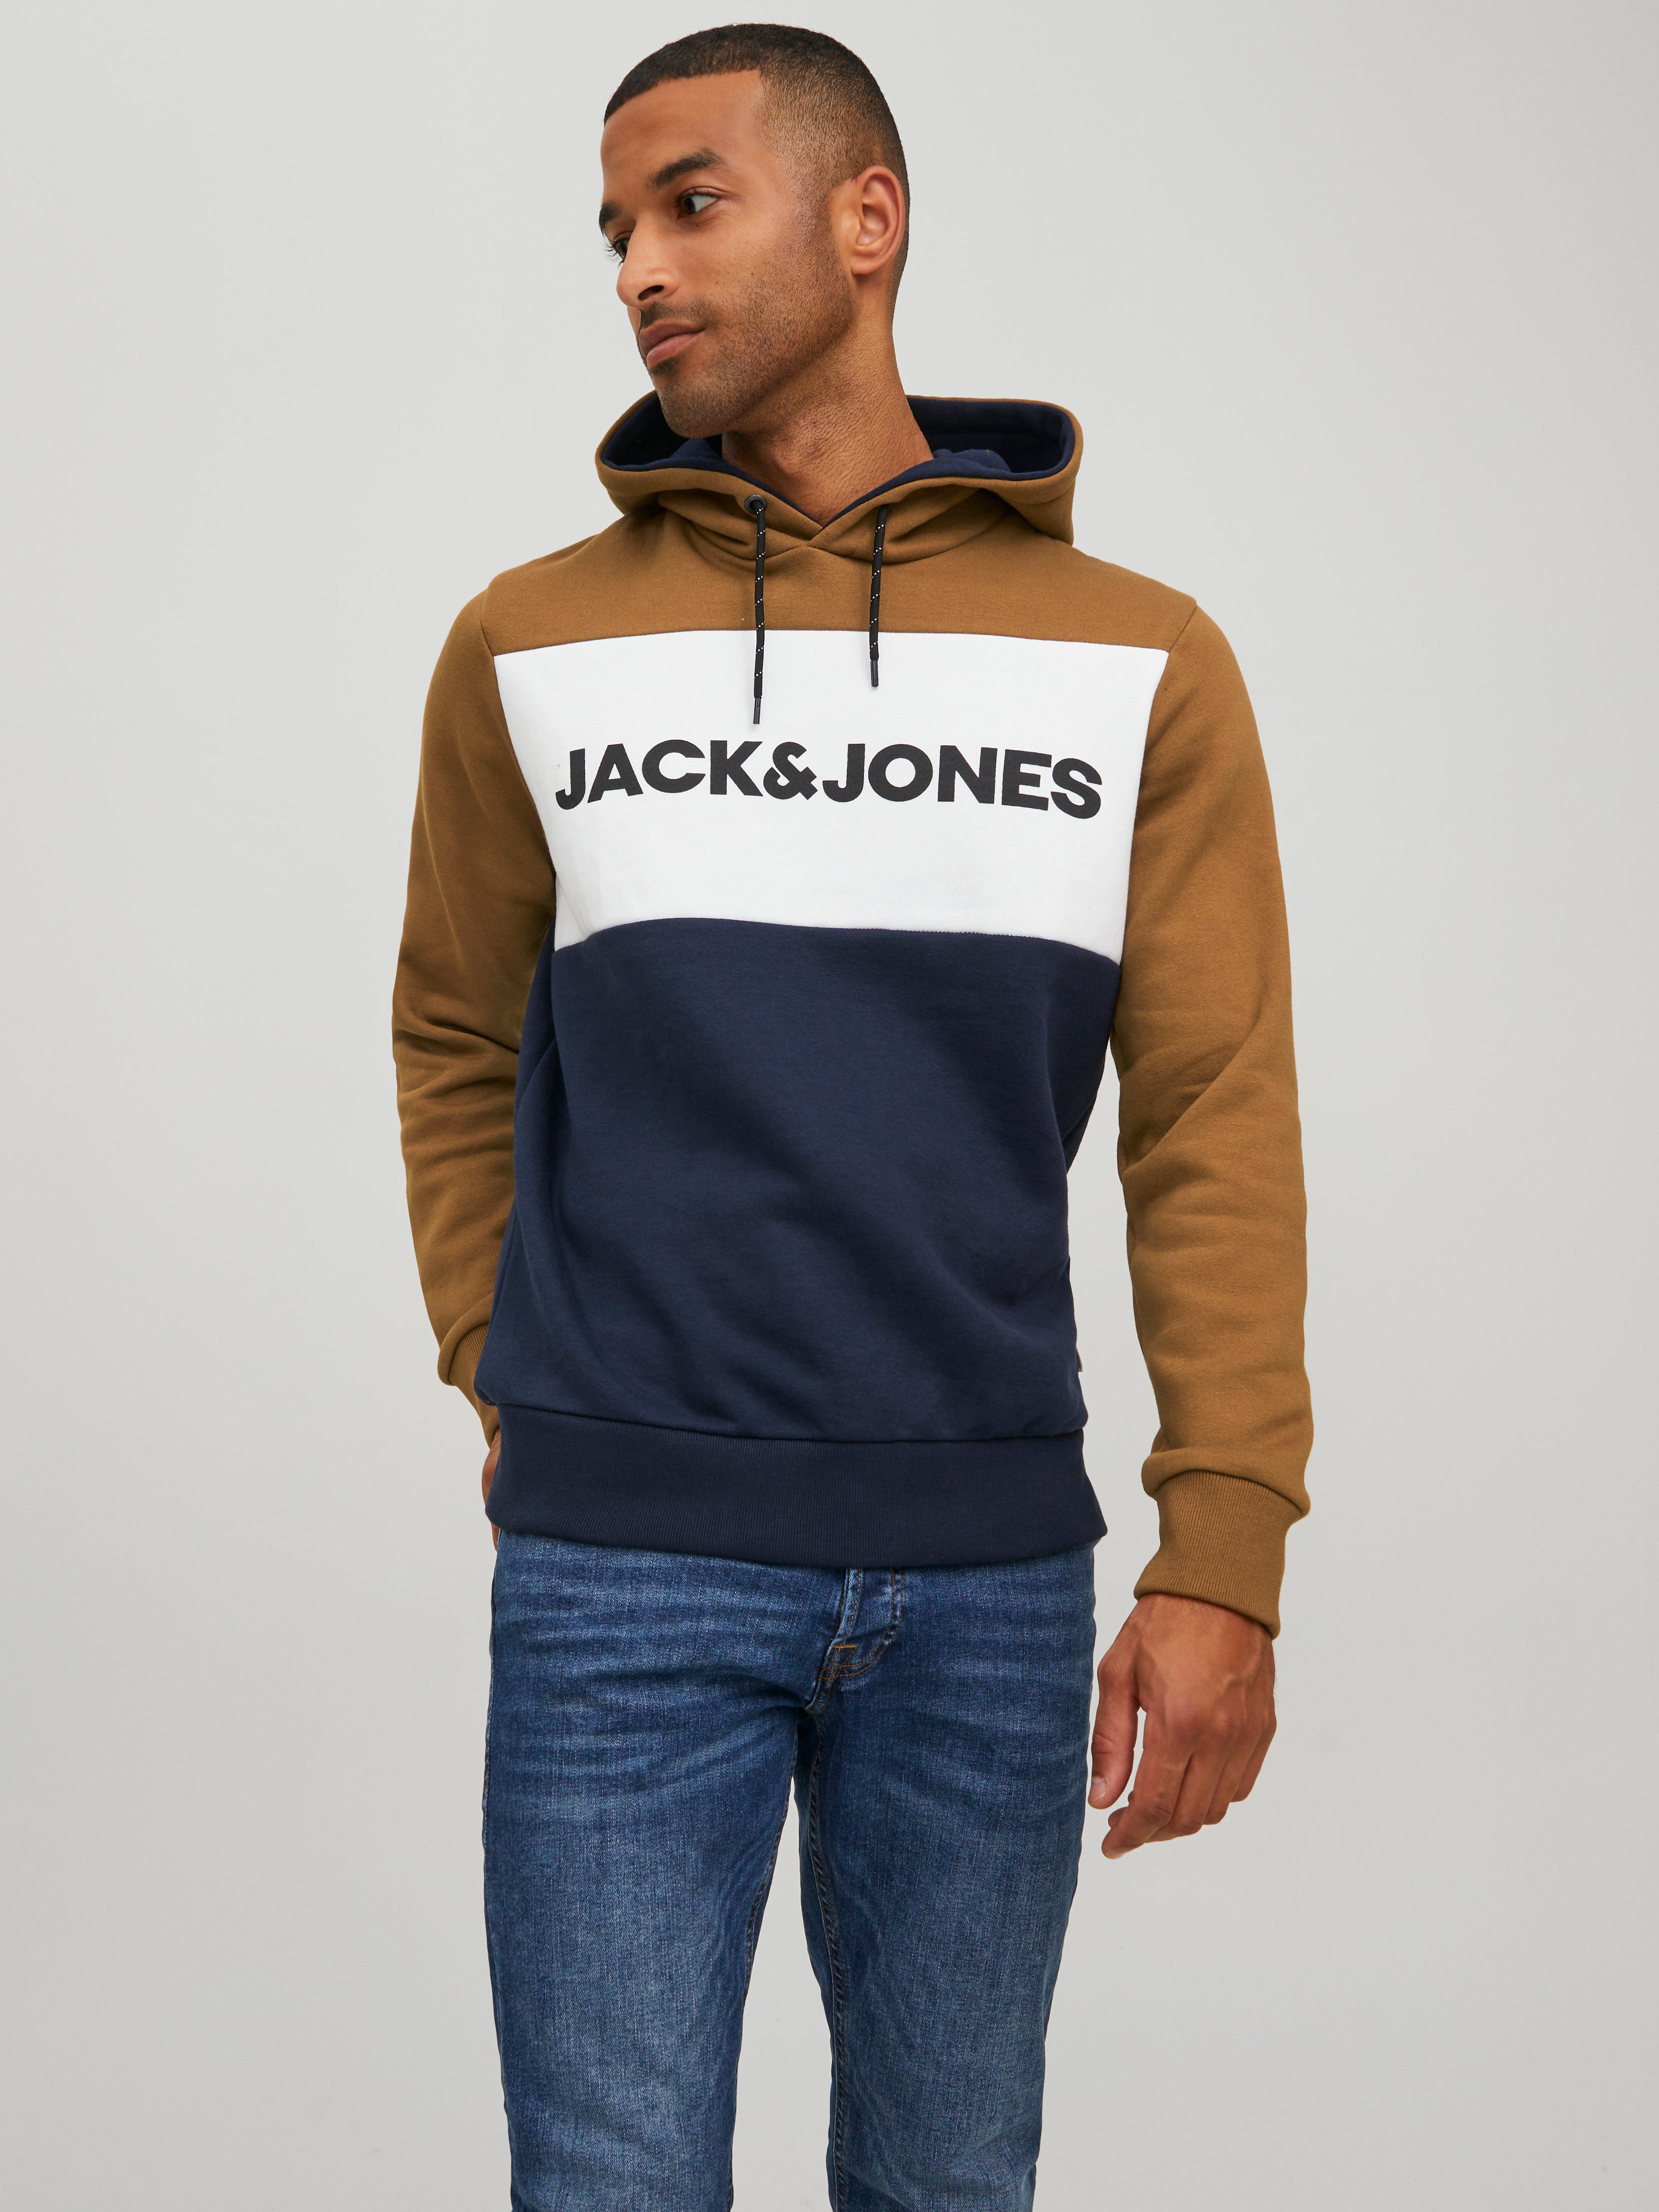 HERREN Pullovers & Sweatshirts Hoodie Schwarz/Grau/Orange M Rabatt 58 % Jack & Jones sweatshirt 